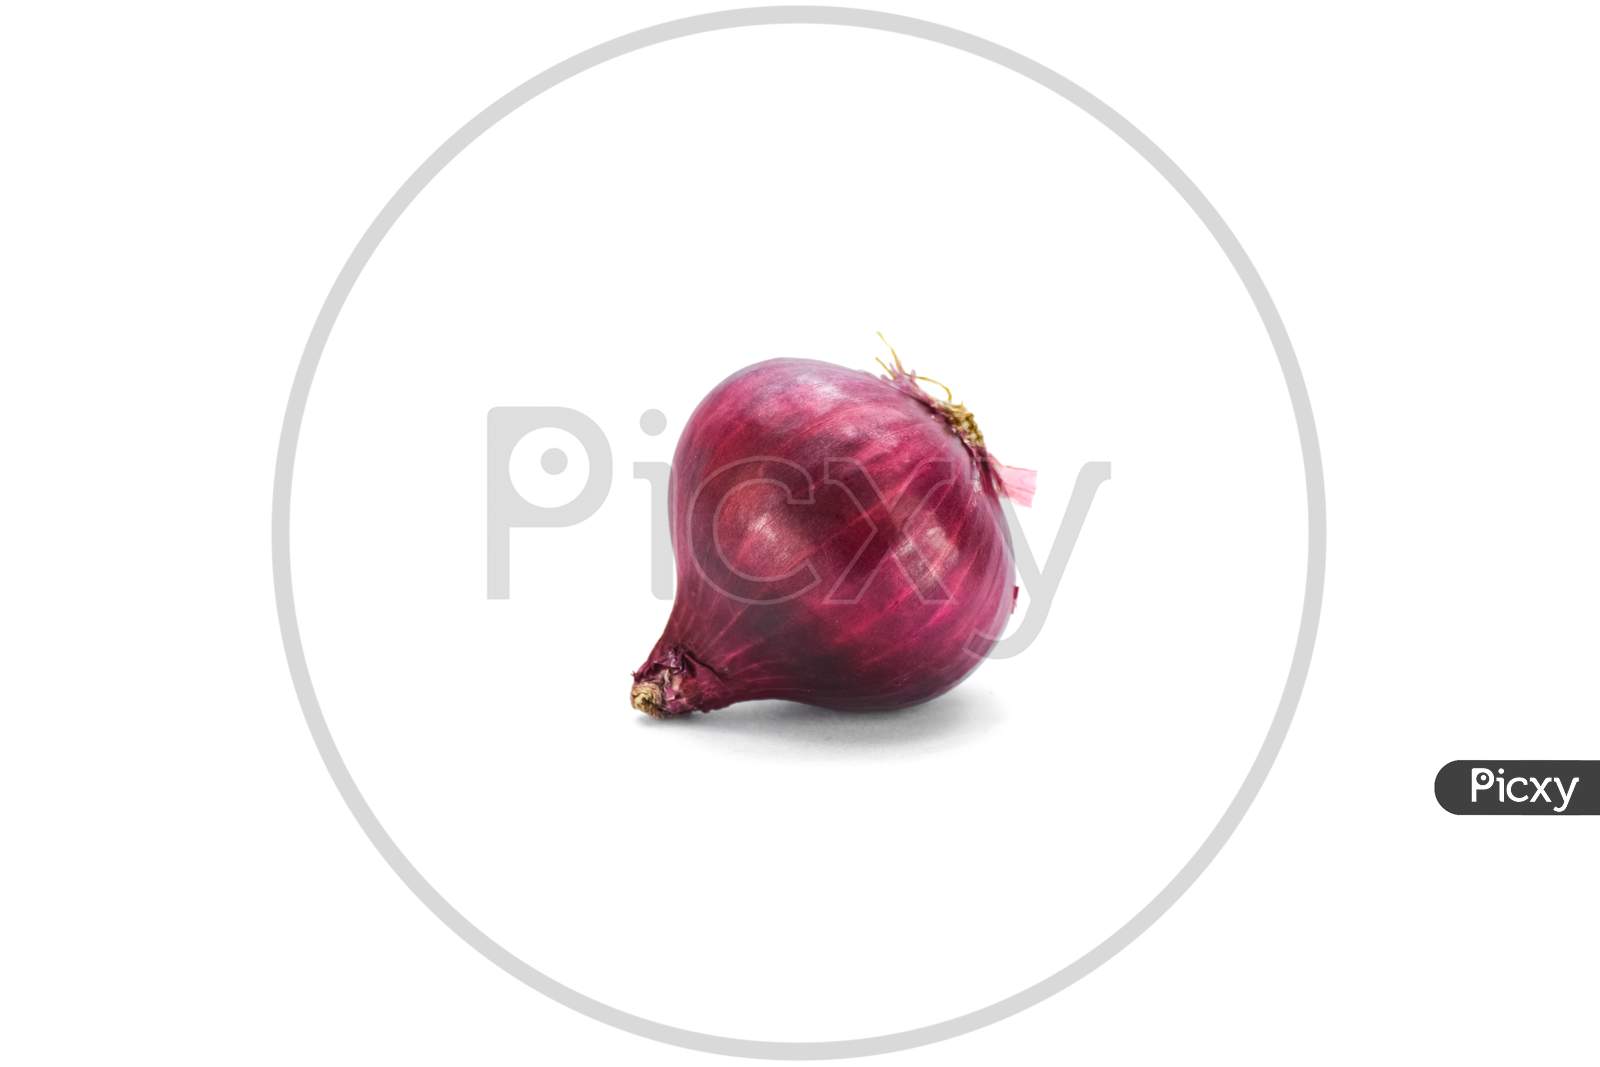 Fresh onion isolated on white background